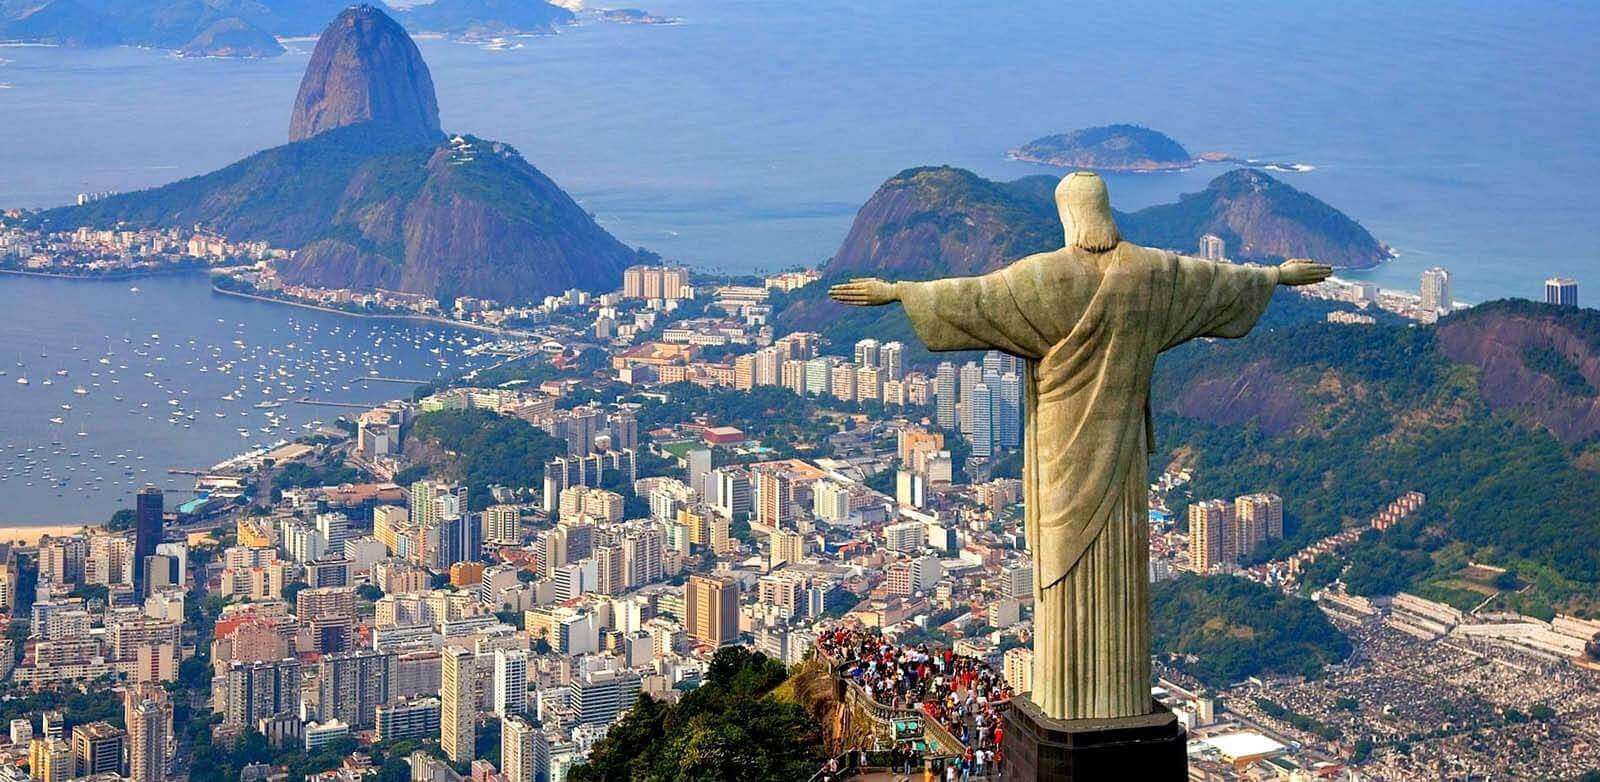 Rio de Janeiro Cidade Maravilhosa